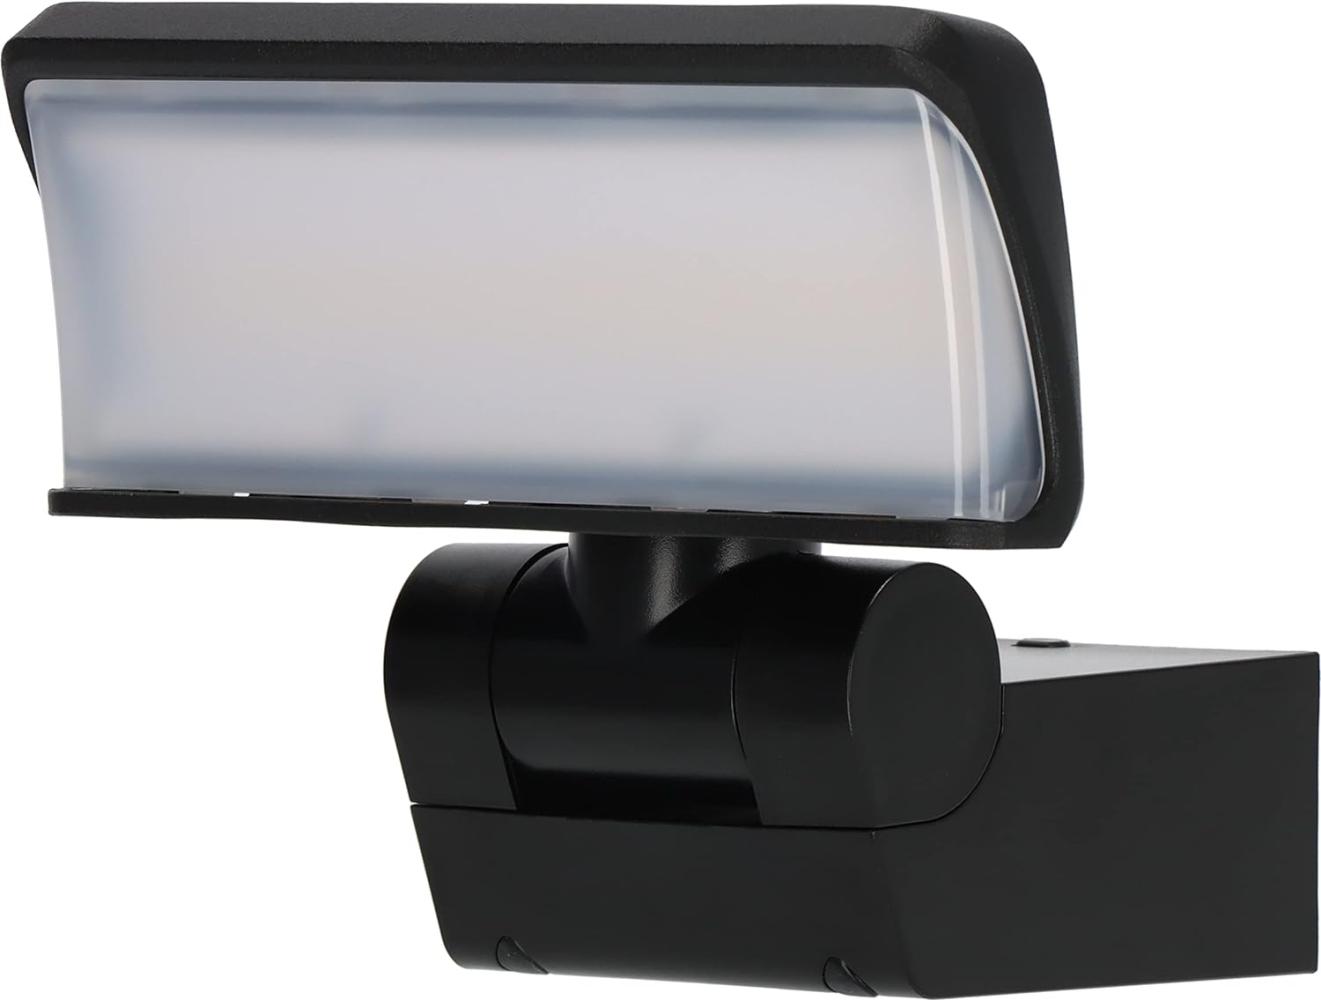 Brennenstuhl LED Strahler WS 2050 S/LED Außenstrahler 20W (1680lm, IP44, 3000K, warmweiße Lichtfarbe, Strahlerkopf horizontal und vertikal schwenkbar) schwarz Bild 1